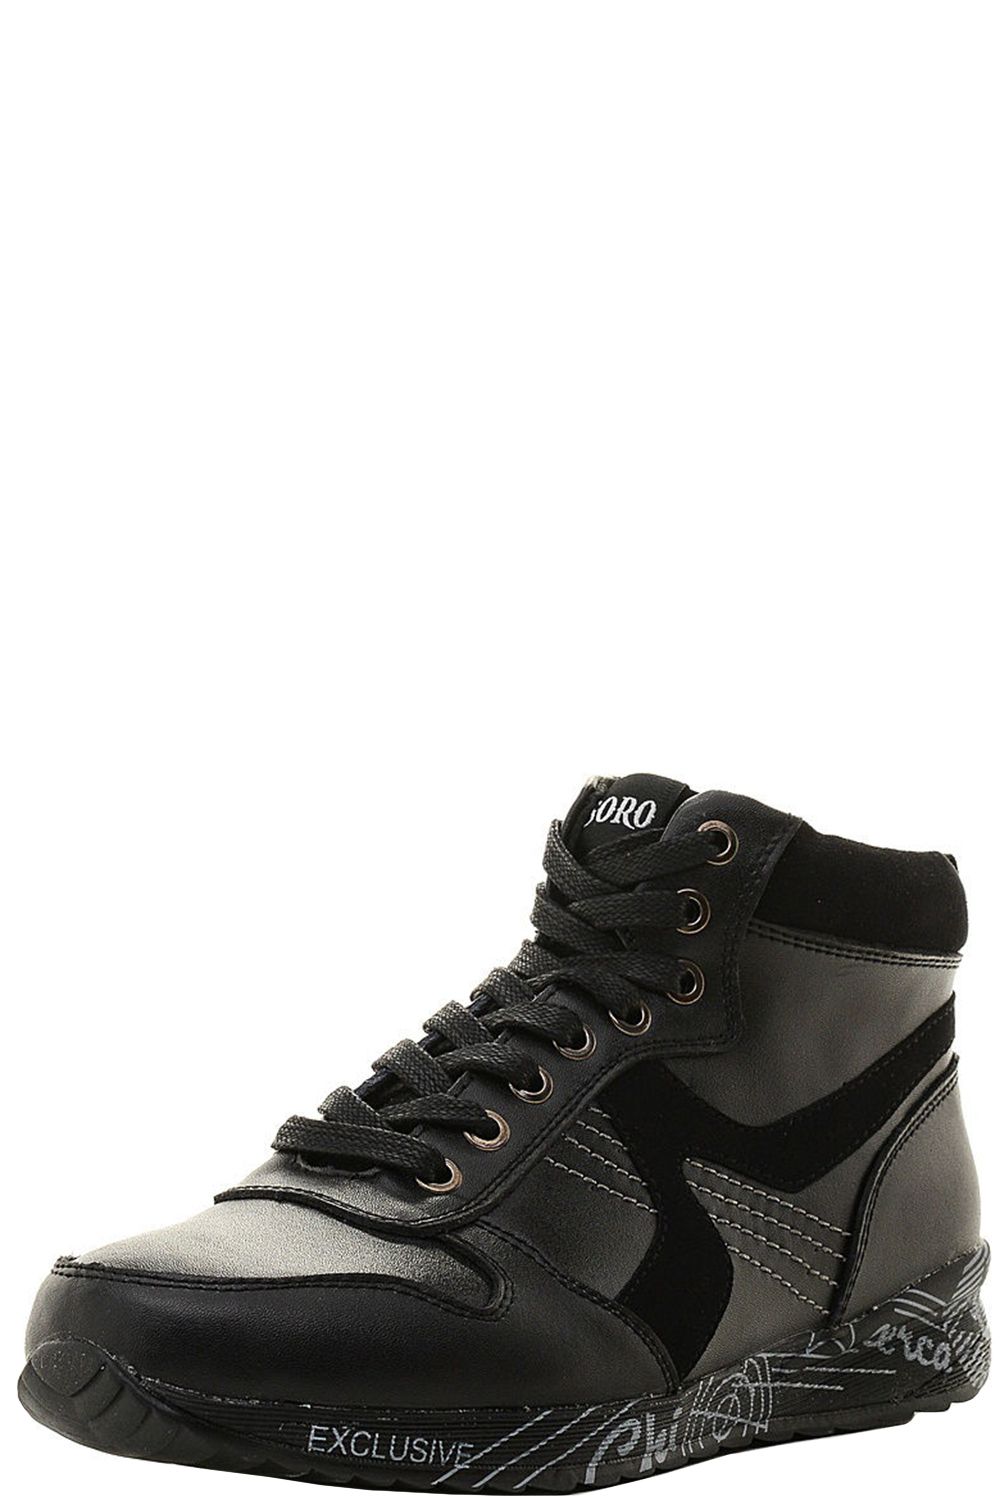 Ботинки Tesoro, размер 38, цвет черный 168643/01-11 - фото 1